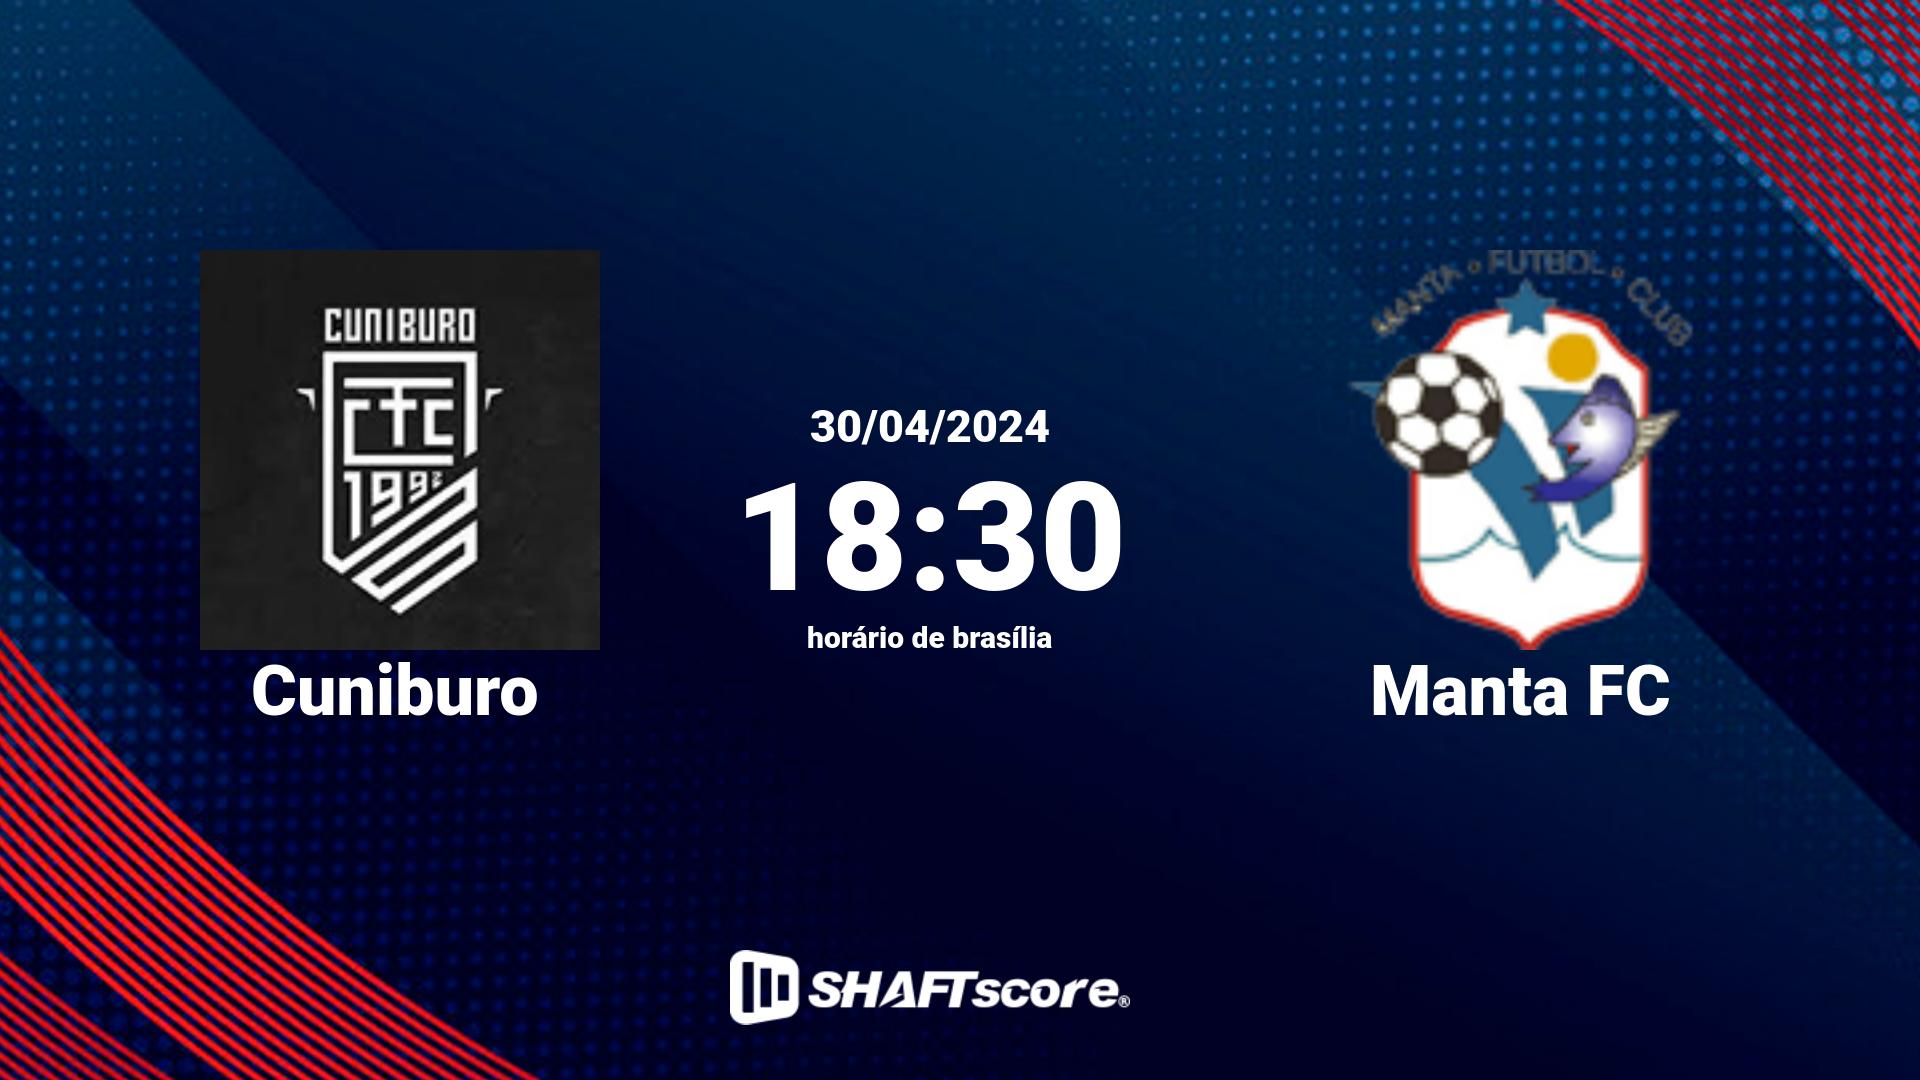 Estatísticas do jogo Cuniburo vs Manta FC 30.04 18:30